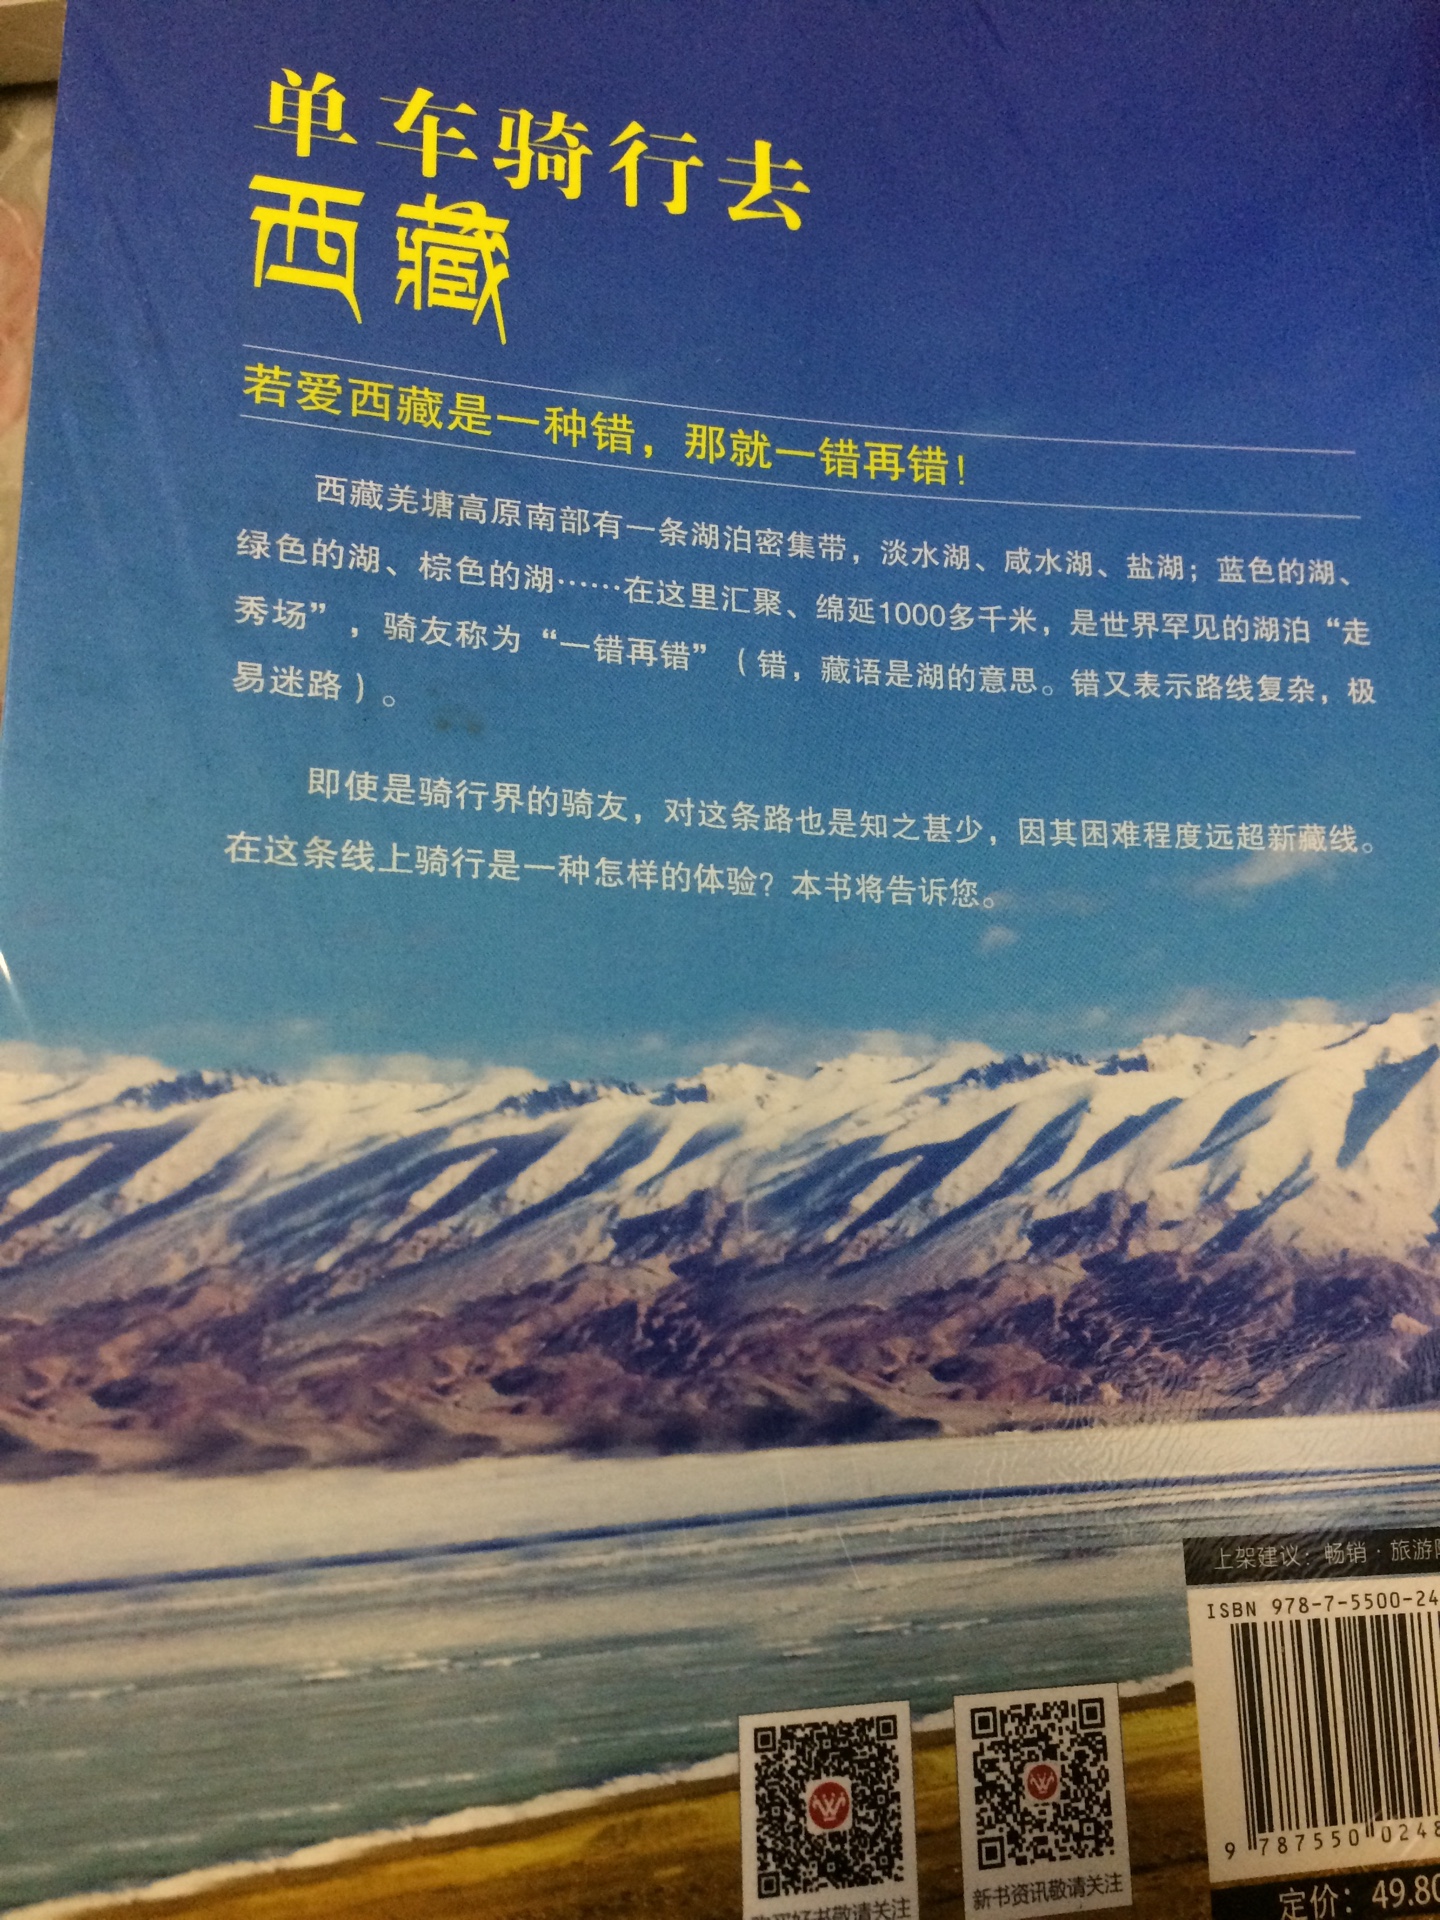 有塑封16开，骑行游西藏旅游书，值得推荐。